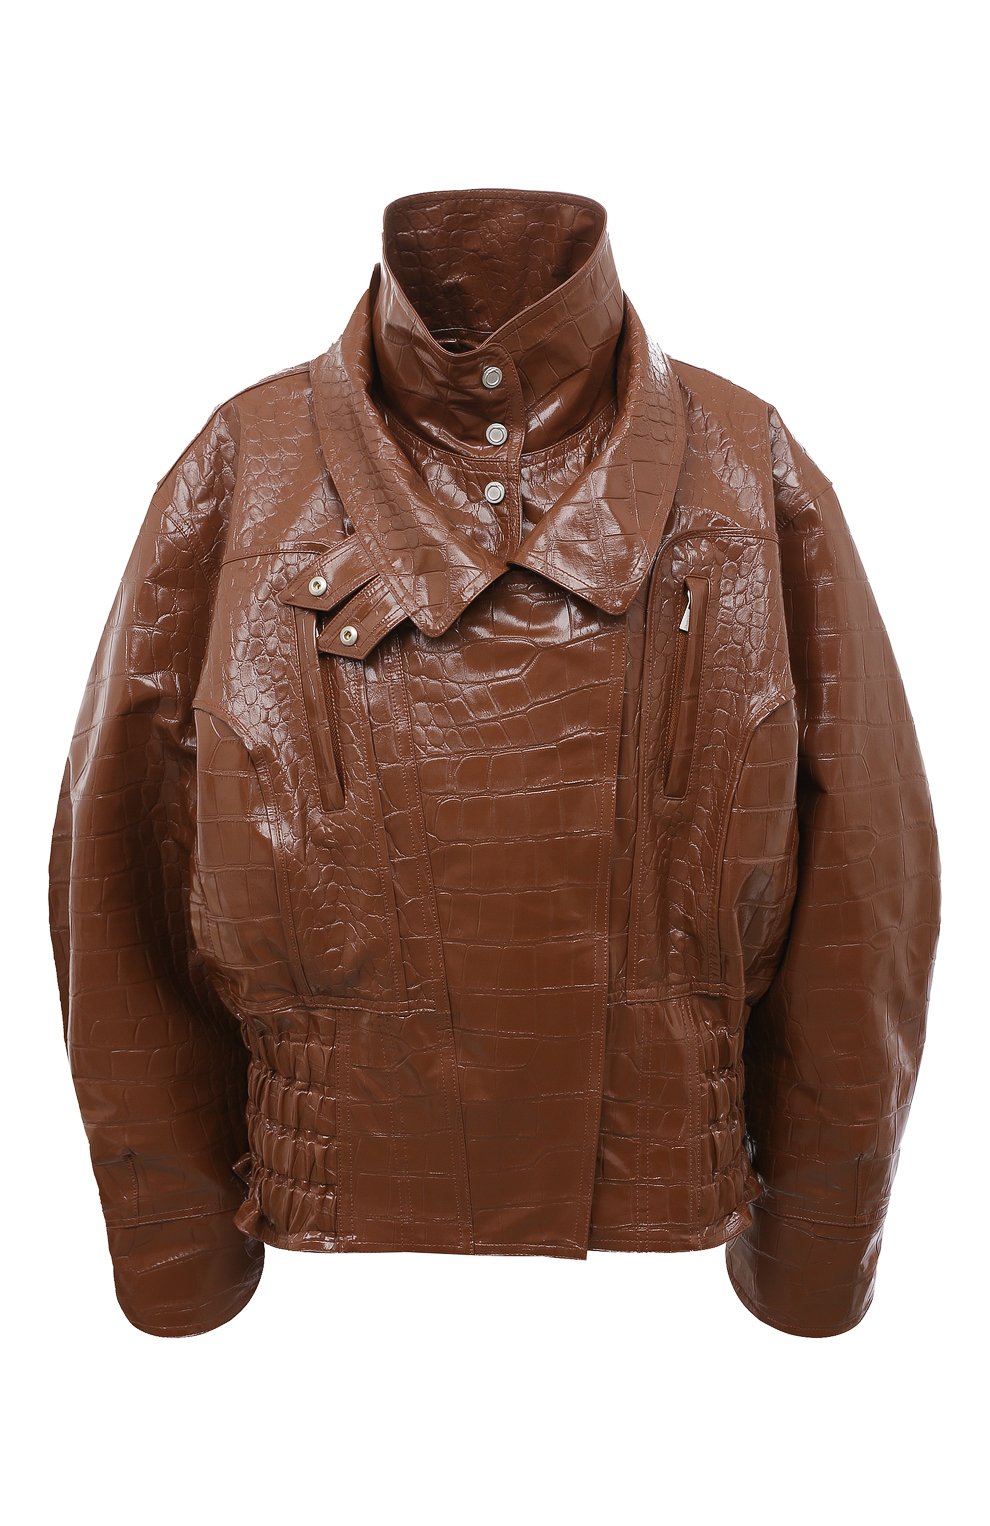 Куртки Trussardi, Куртка Trussardi, Индия, Коричневый, Полиэстер: 100%;, 13387098  - купить